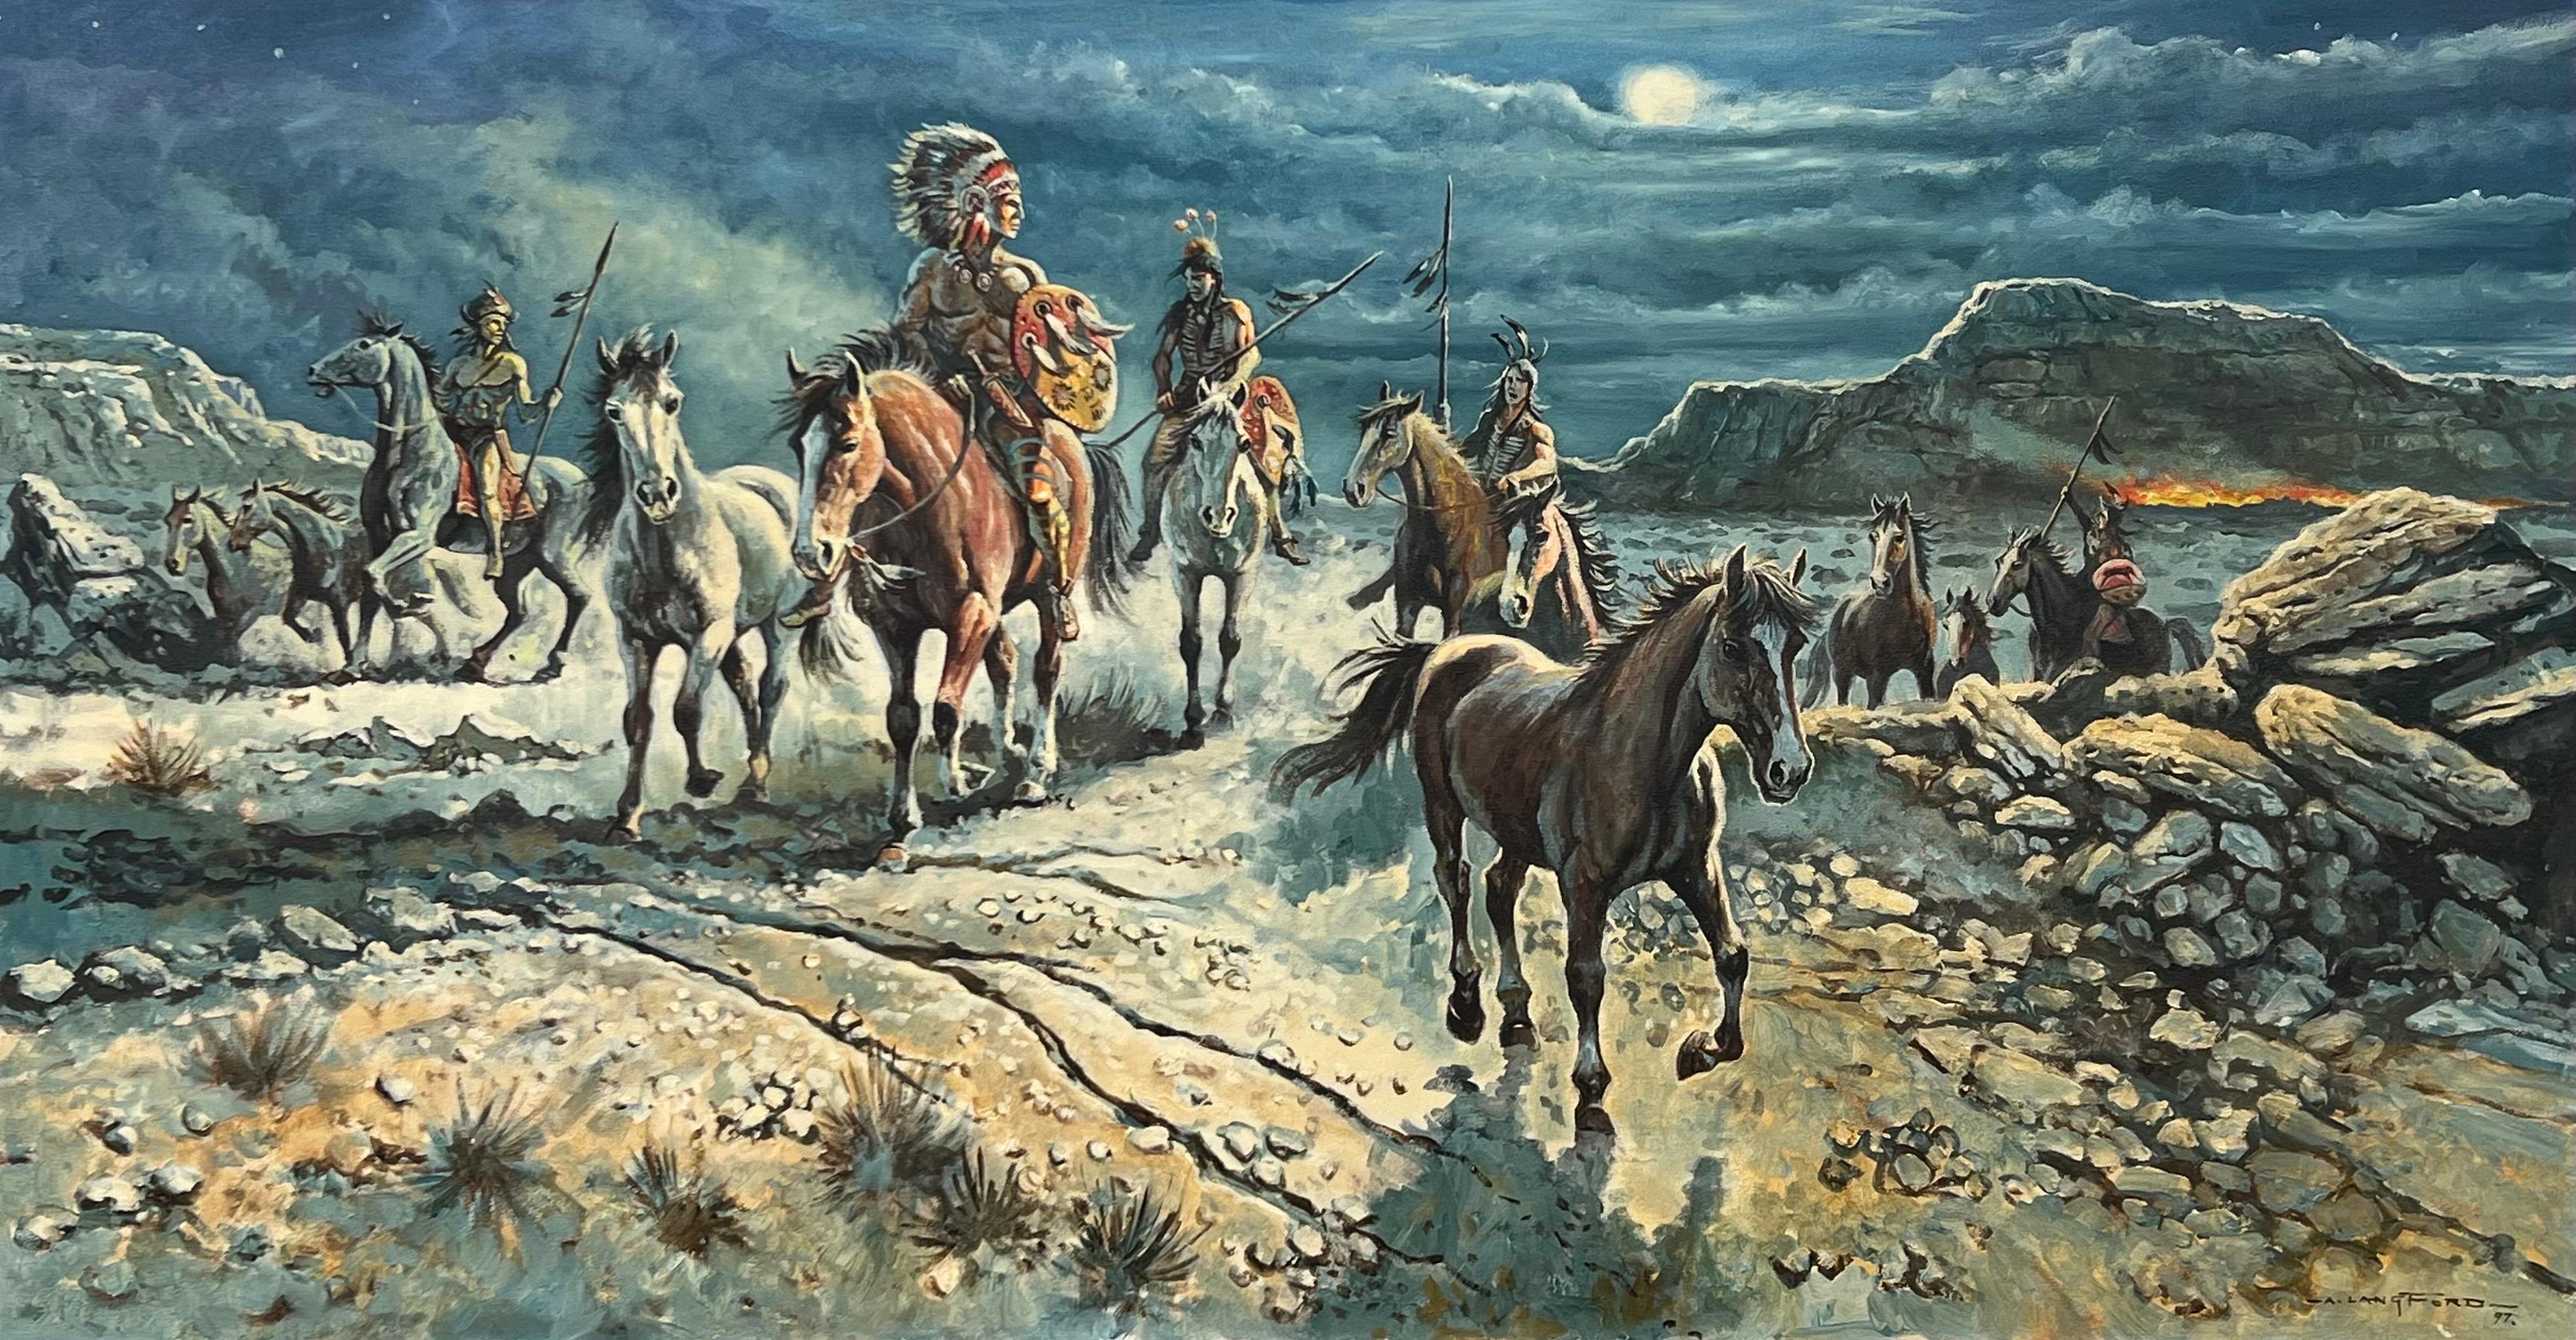 Animal Painting Alan Langford - Warriors amérindiens à cheval sur un paysage dramatique en pleine lune